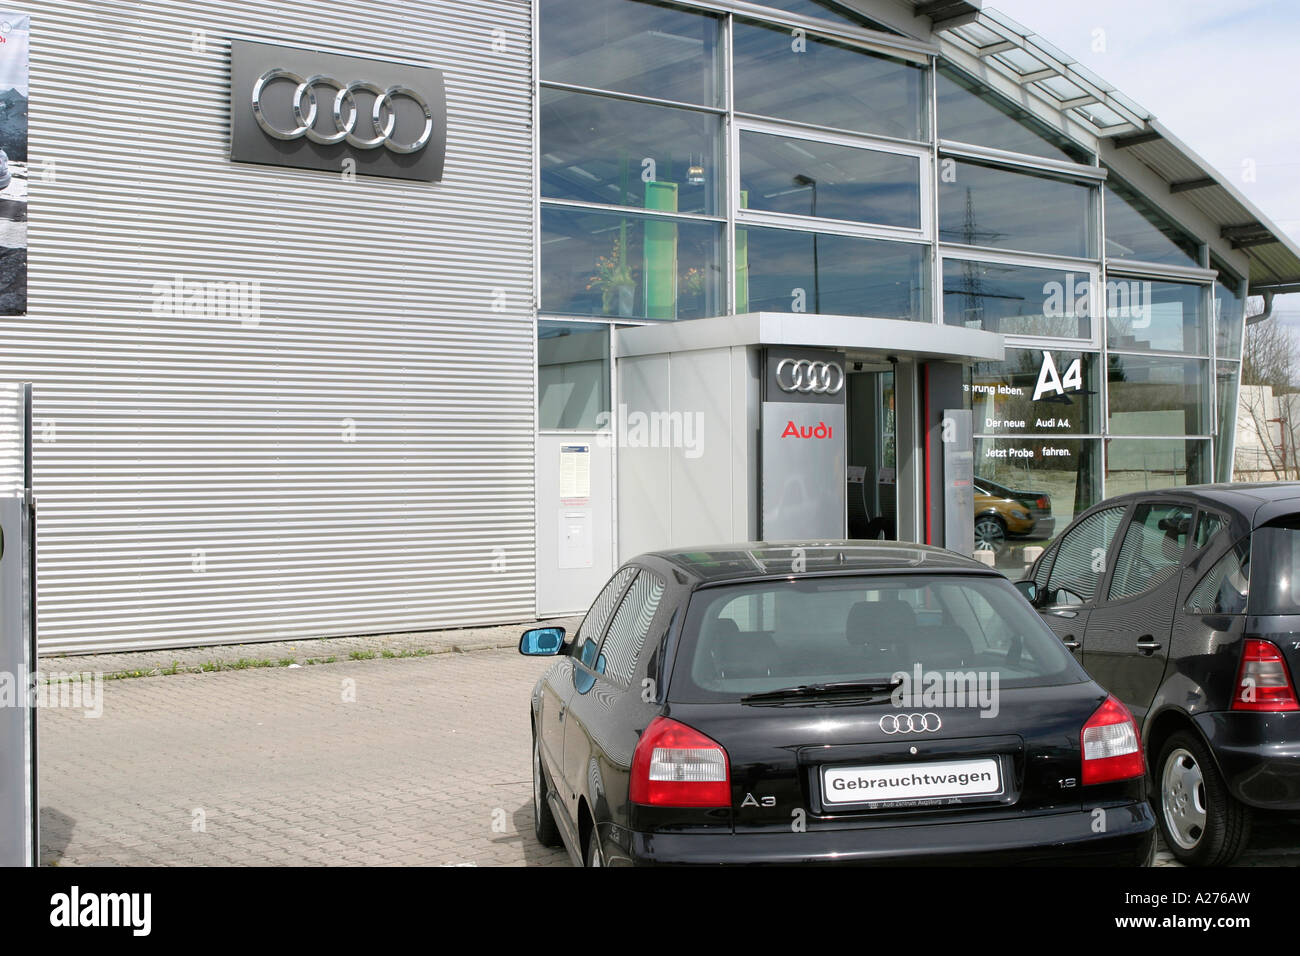 Audi ShopAudi A4 - Audi Shop - Compra o reserva 100% Online